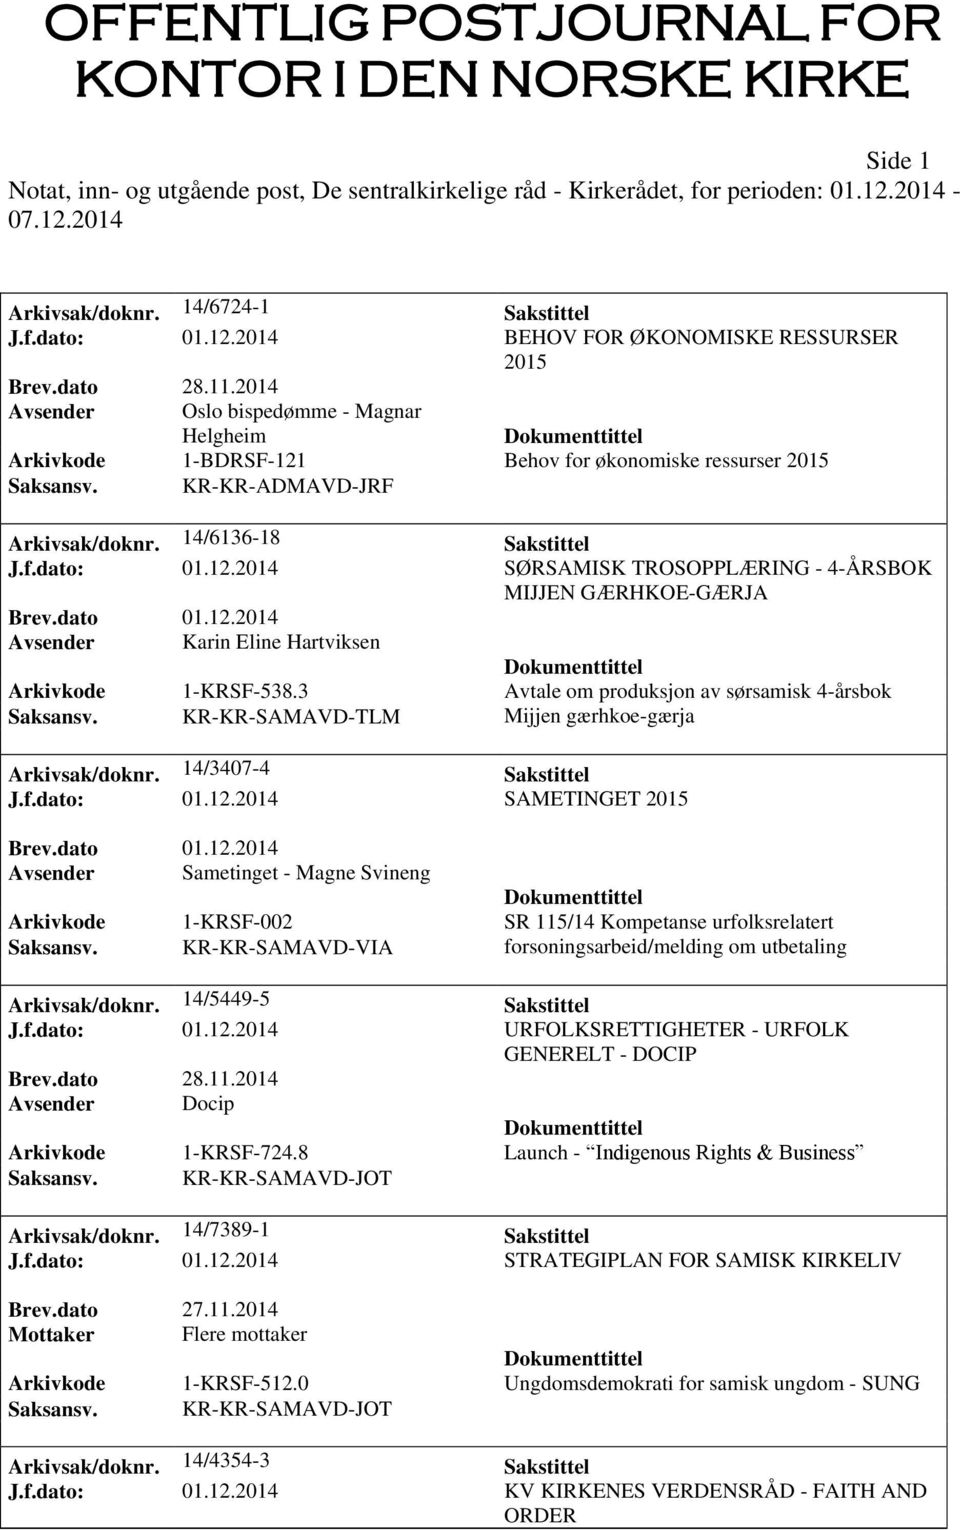 3 Avtale om produksjon av sørsamisk 4-årsbok Saksansv. KR-KR-SAMAVD-TLM Mijjen gærhkoe-gærja Arkivsak/doknr. 14/3407-4 Sakstittel J.f.dato: 01.12.